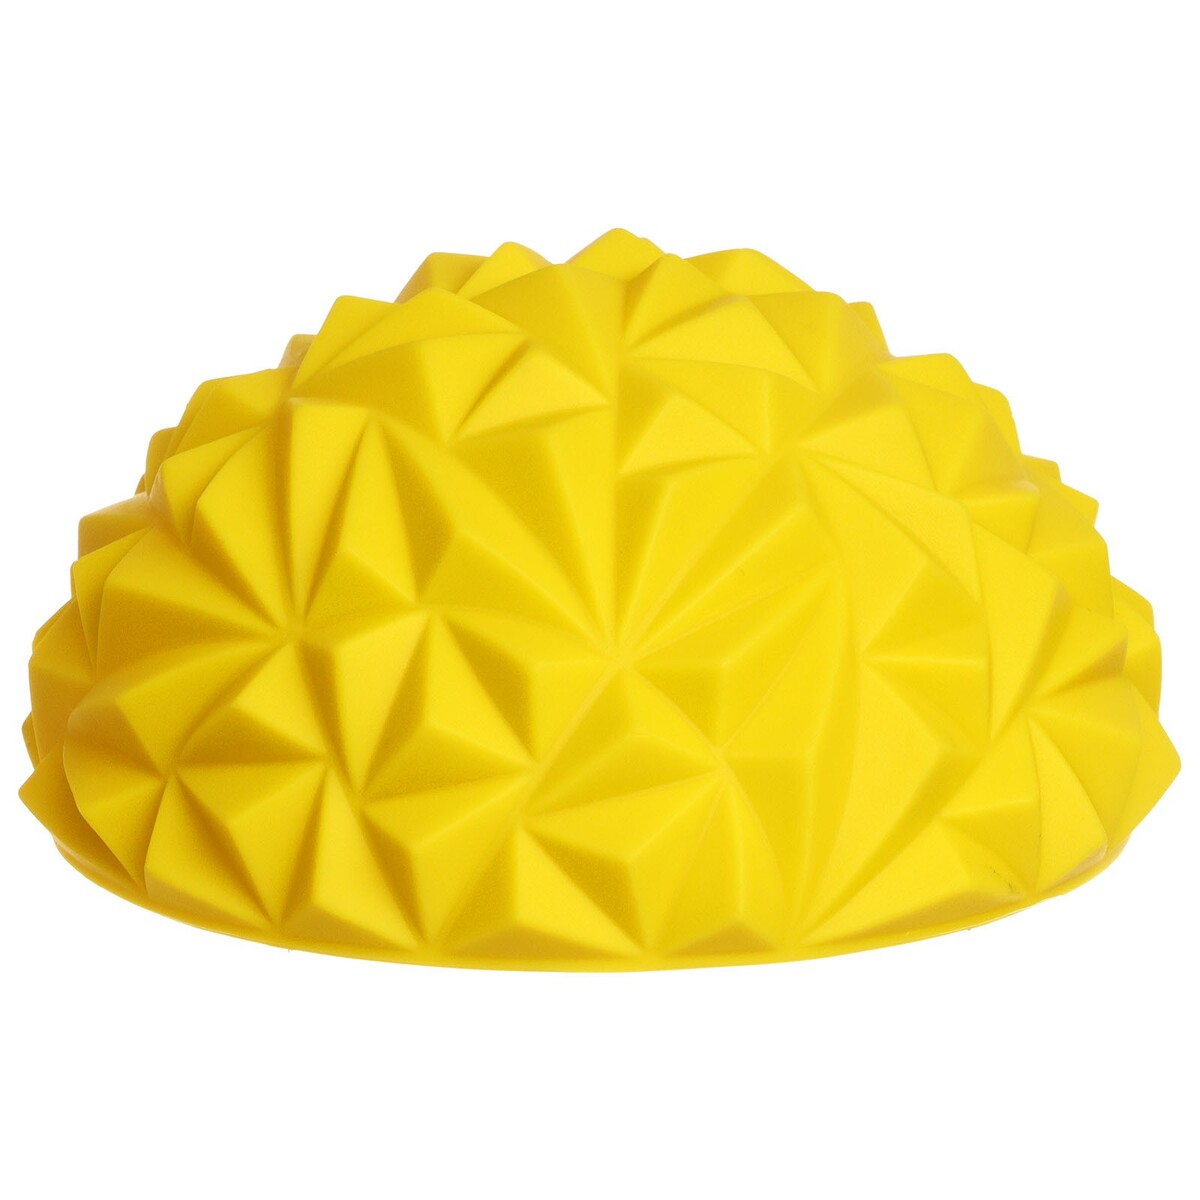 Полусфера массажная, 16х16х9 см, цвет желтый массажная балансировочная полусфера togu senso balance hedgehog d16 см 465154